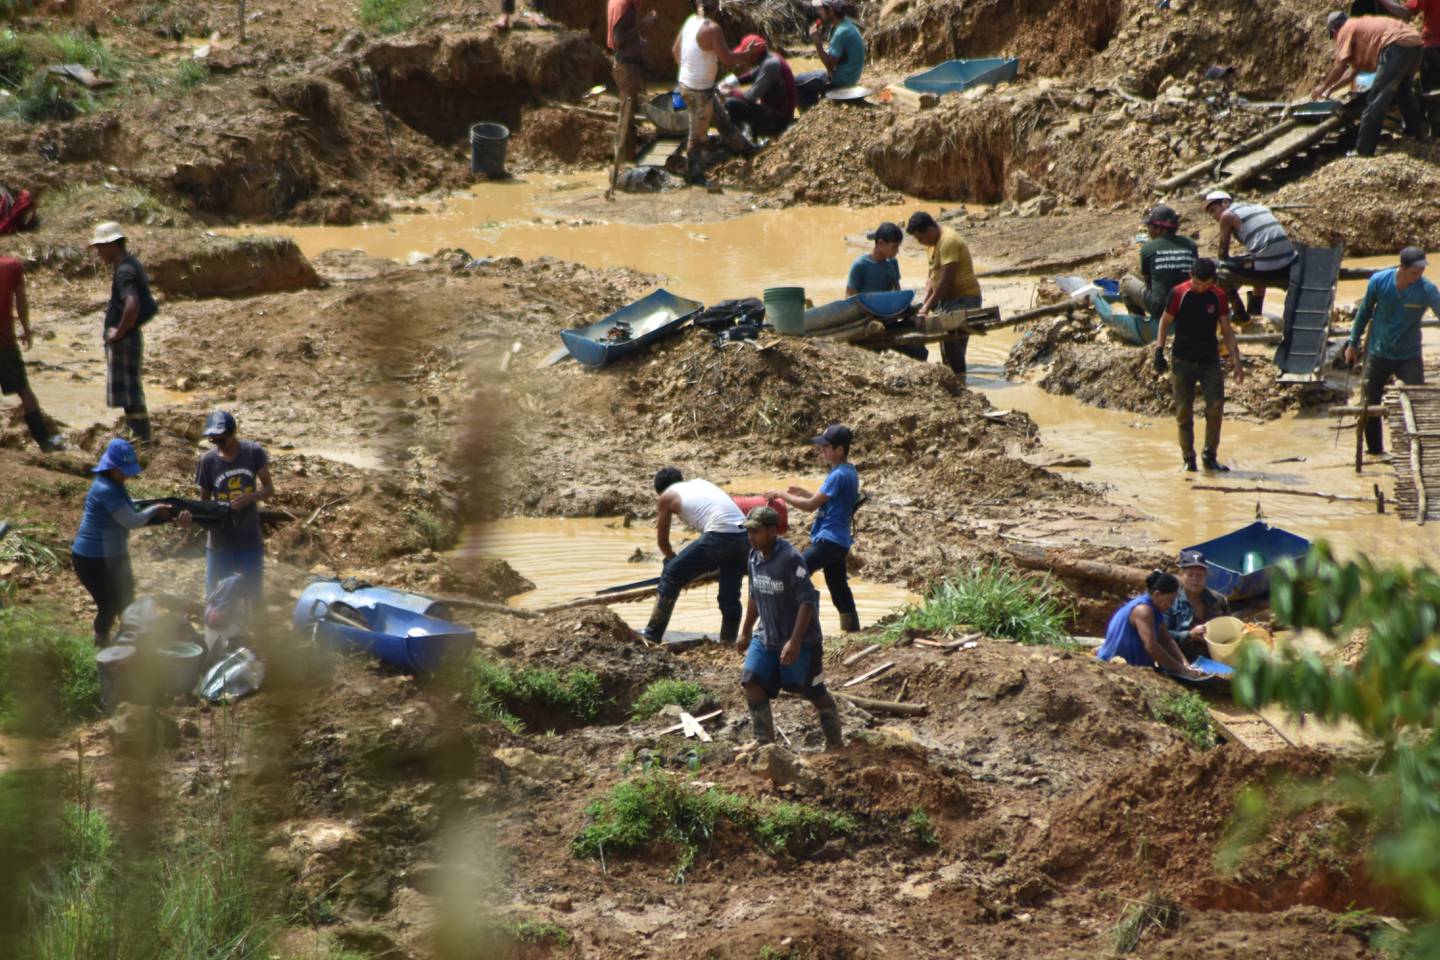 Los coligalleros hacen pequeños grupos para colaborarse unos a otros en la labor de extracción ilegal del oro en Crucitas, en Cutris de San Carlos, a tan solo 6 kilómetros de la frontera con Nicaragua.